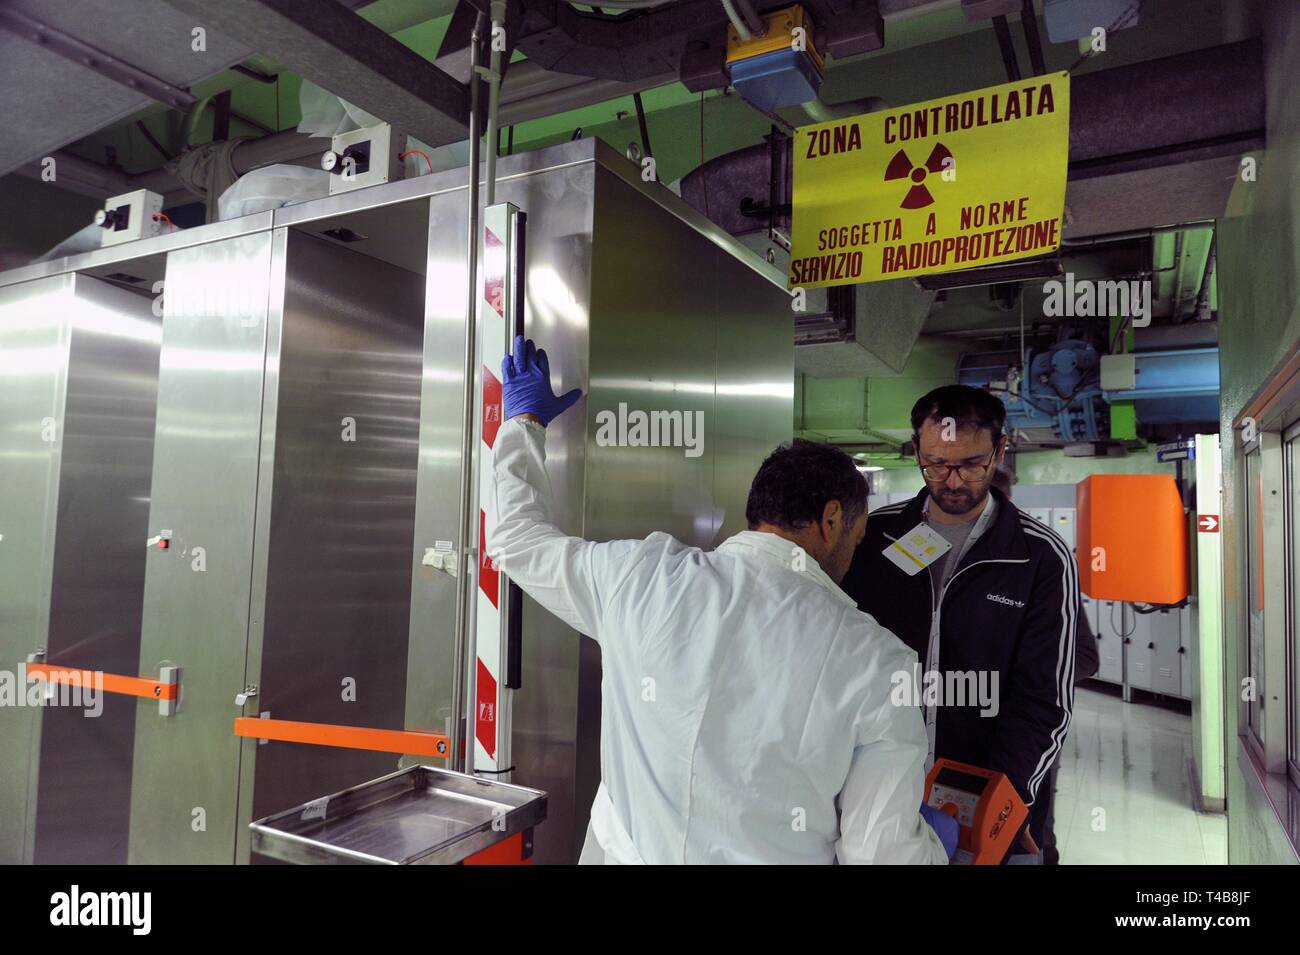 Trino Vercellese Kernkraftwerk, in den Prozess der Deaktivierung durch die Gesellschaft Sogin, verantwortlich für die Stilllegung des italienischen Kernkraftwerke nach der beliebten Referenden von 1987 und 2011. Radioaktivität Test am Ausgang der kontrollierten Gebiet. Stockfoto